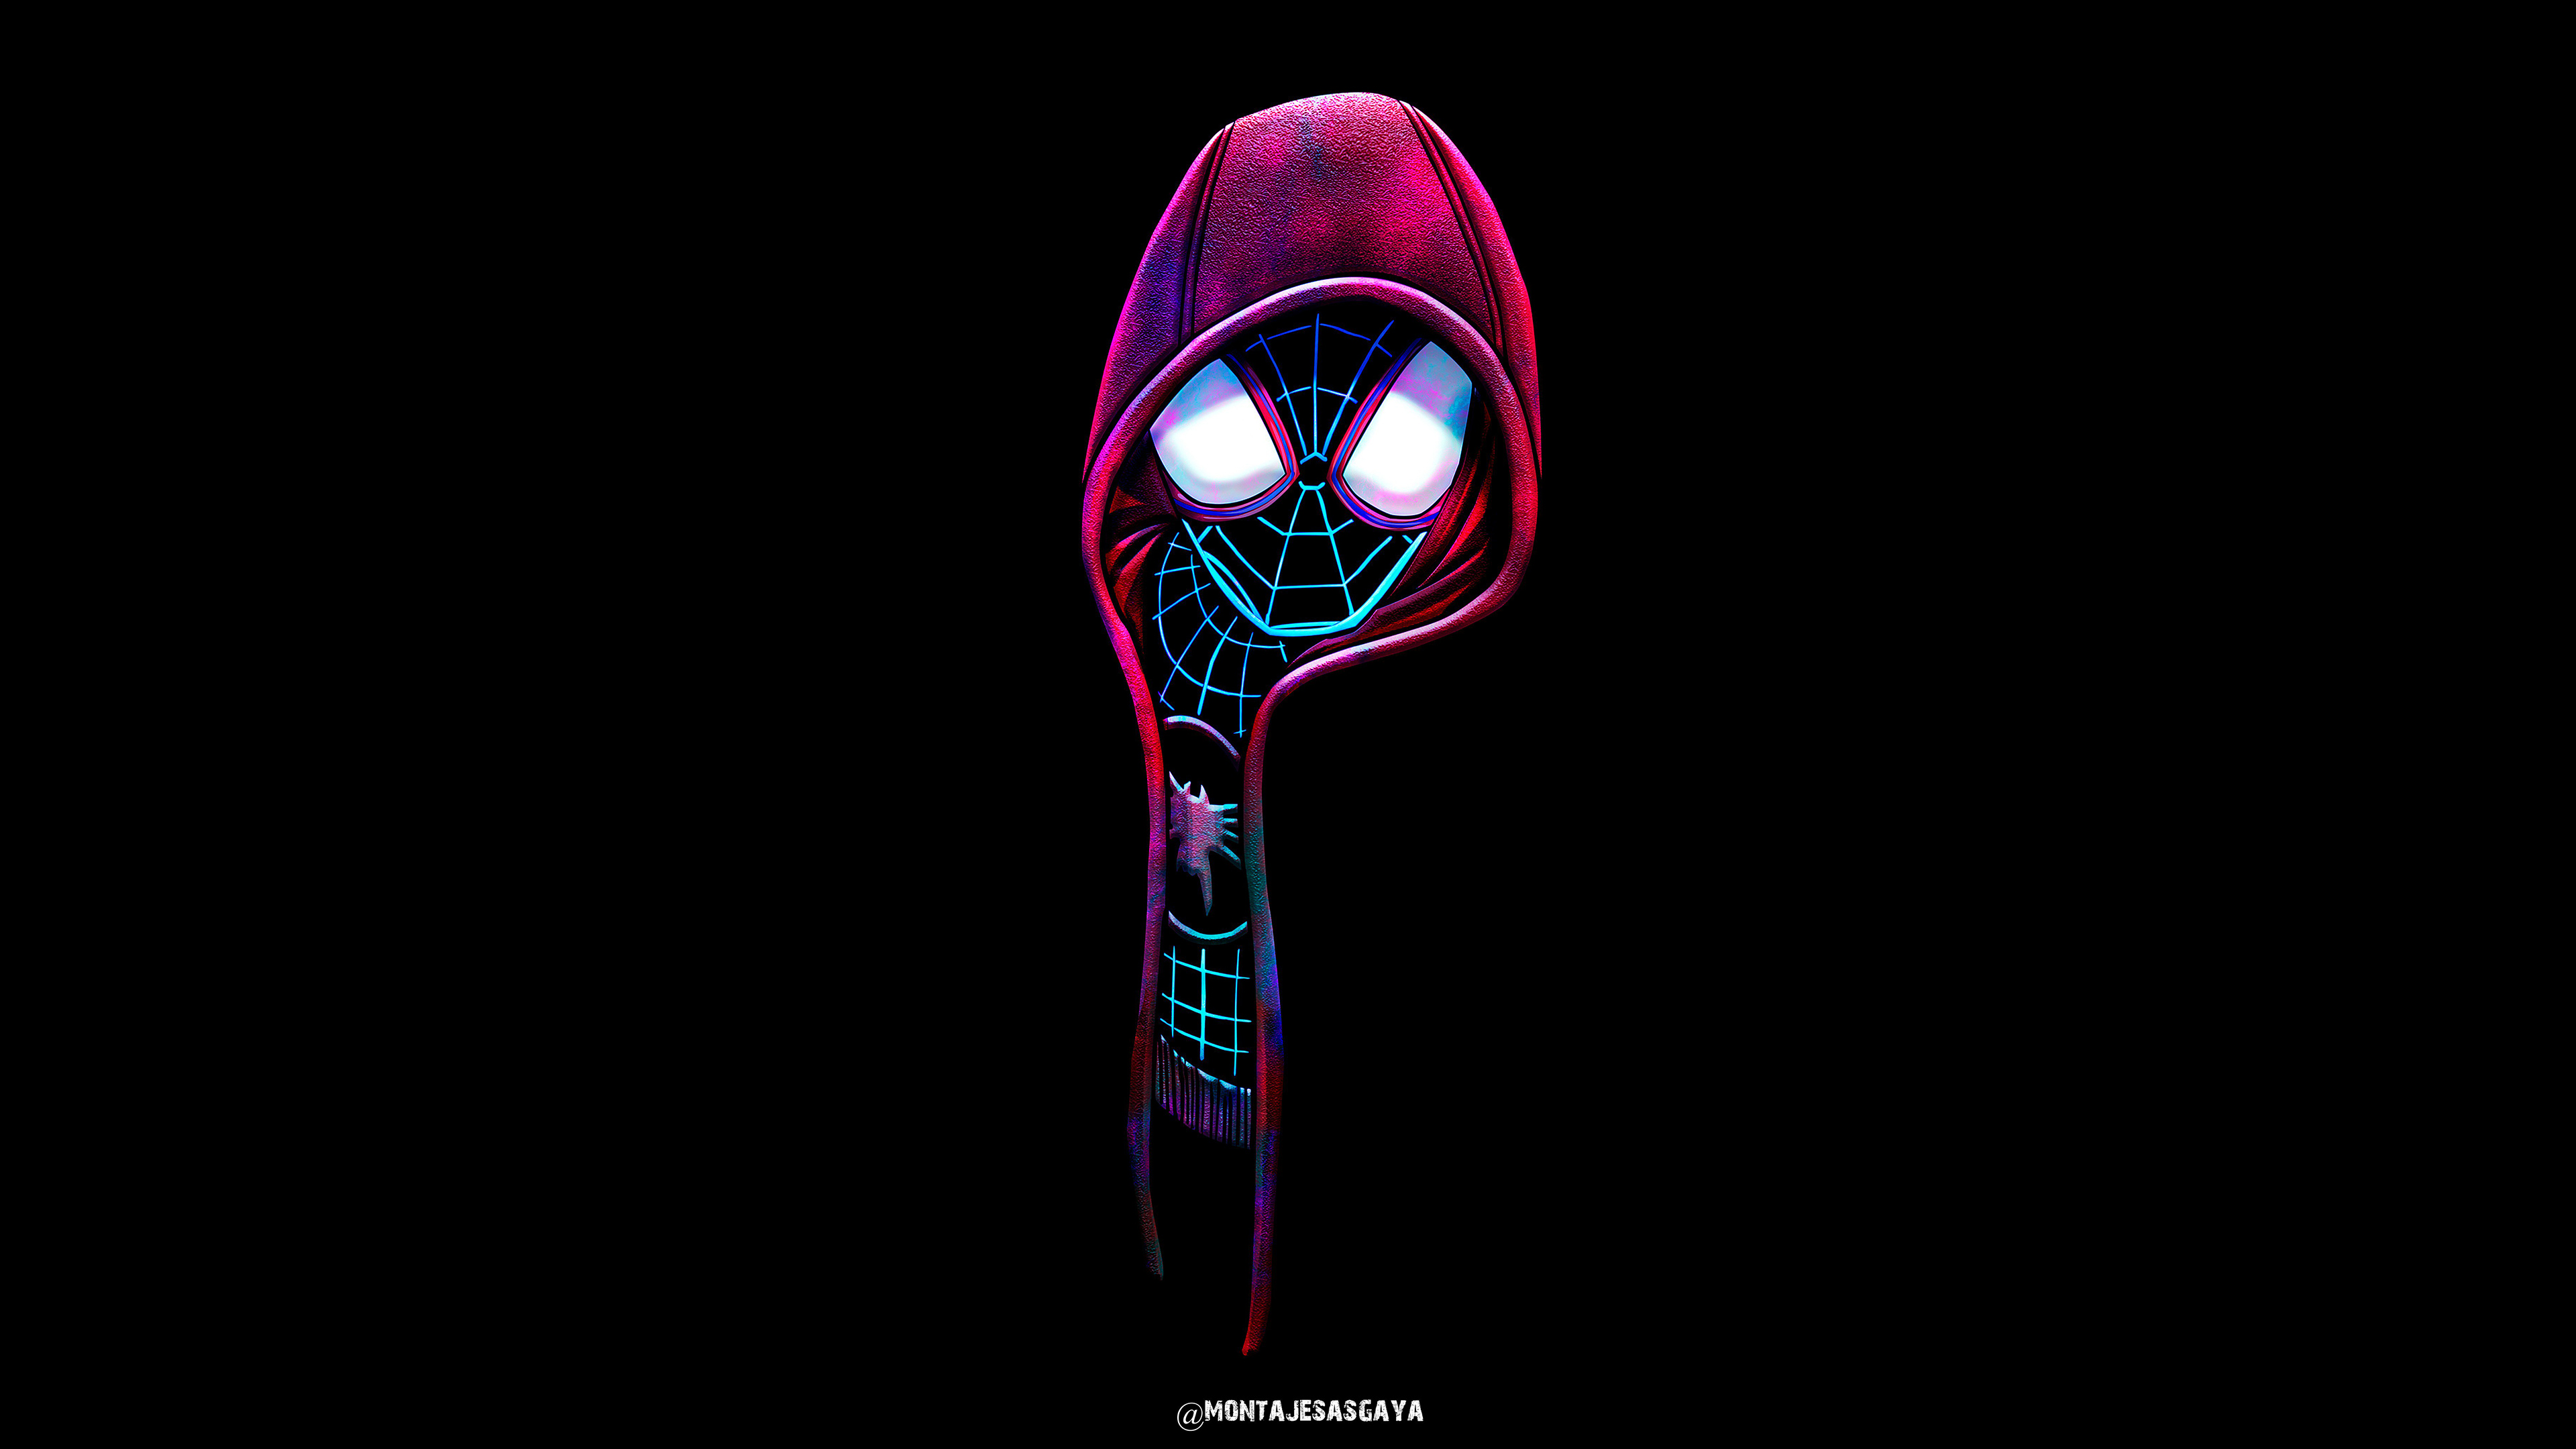 Spiderman Dark Illustration 4k chắc chắn sẽ khiến những người yêu thích siêu anh hùng hưng phấn. Bộ sưu tập những hình ảnh đẹp và đầy sức mạnh sẽ làm bạn mê mẩn ngay lập tức.